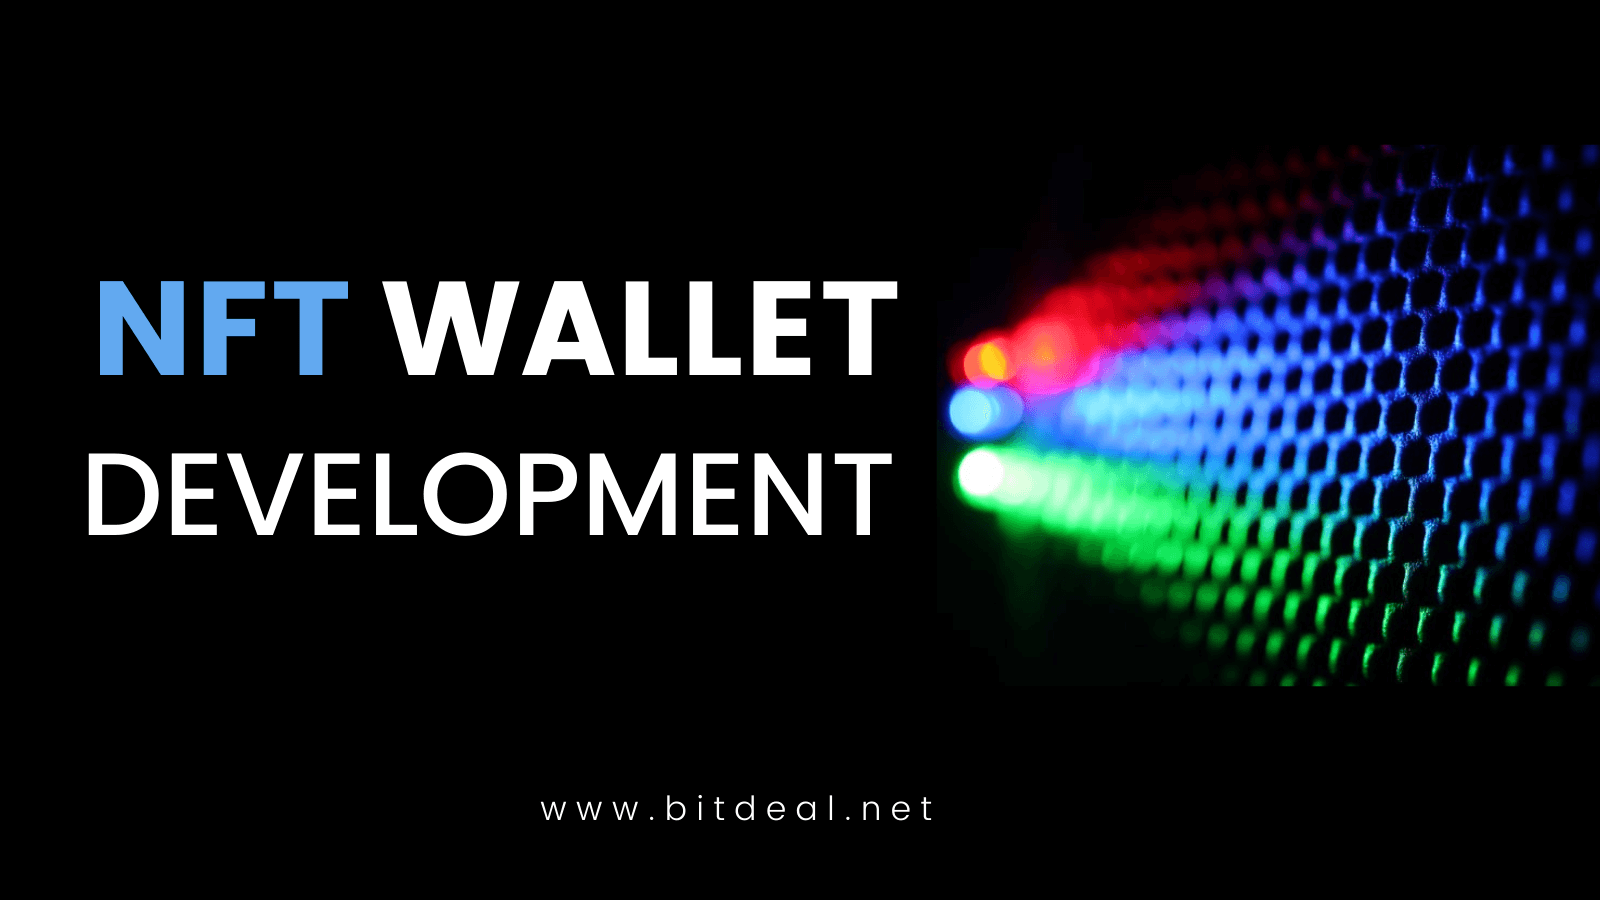 Article about NFT Wallet Development